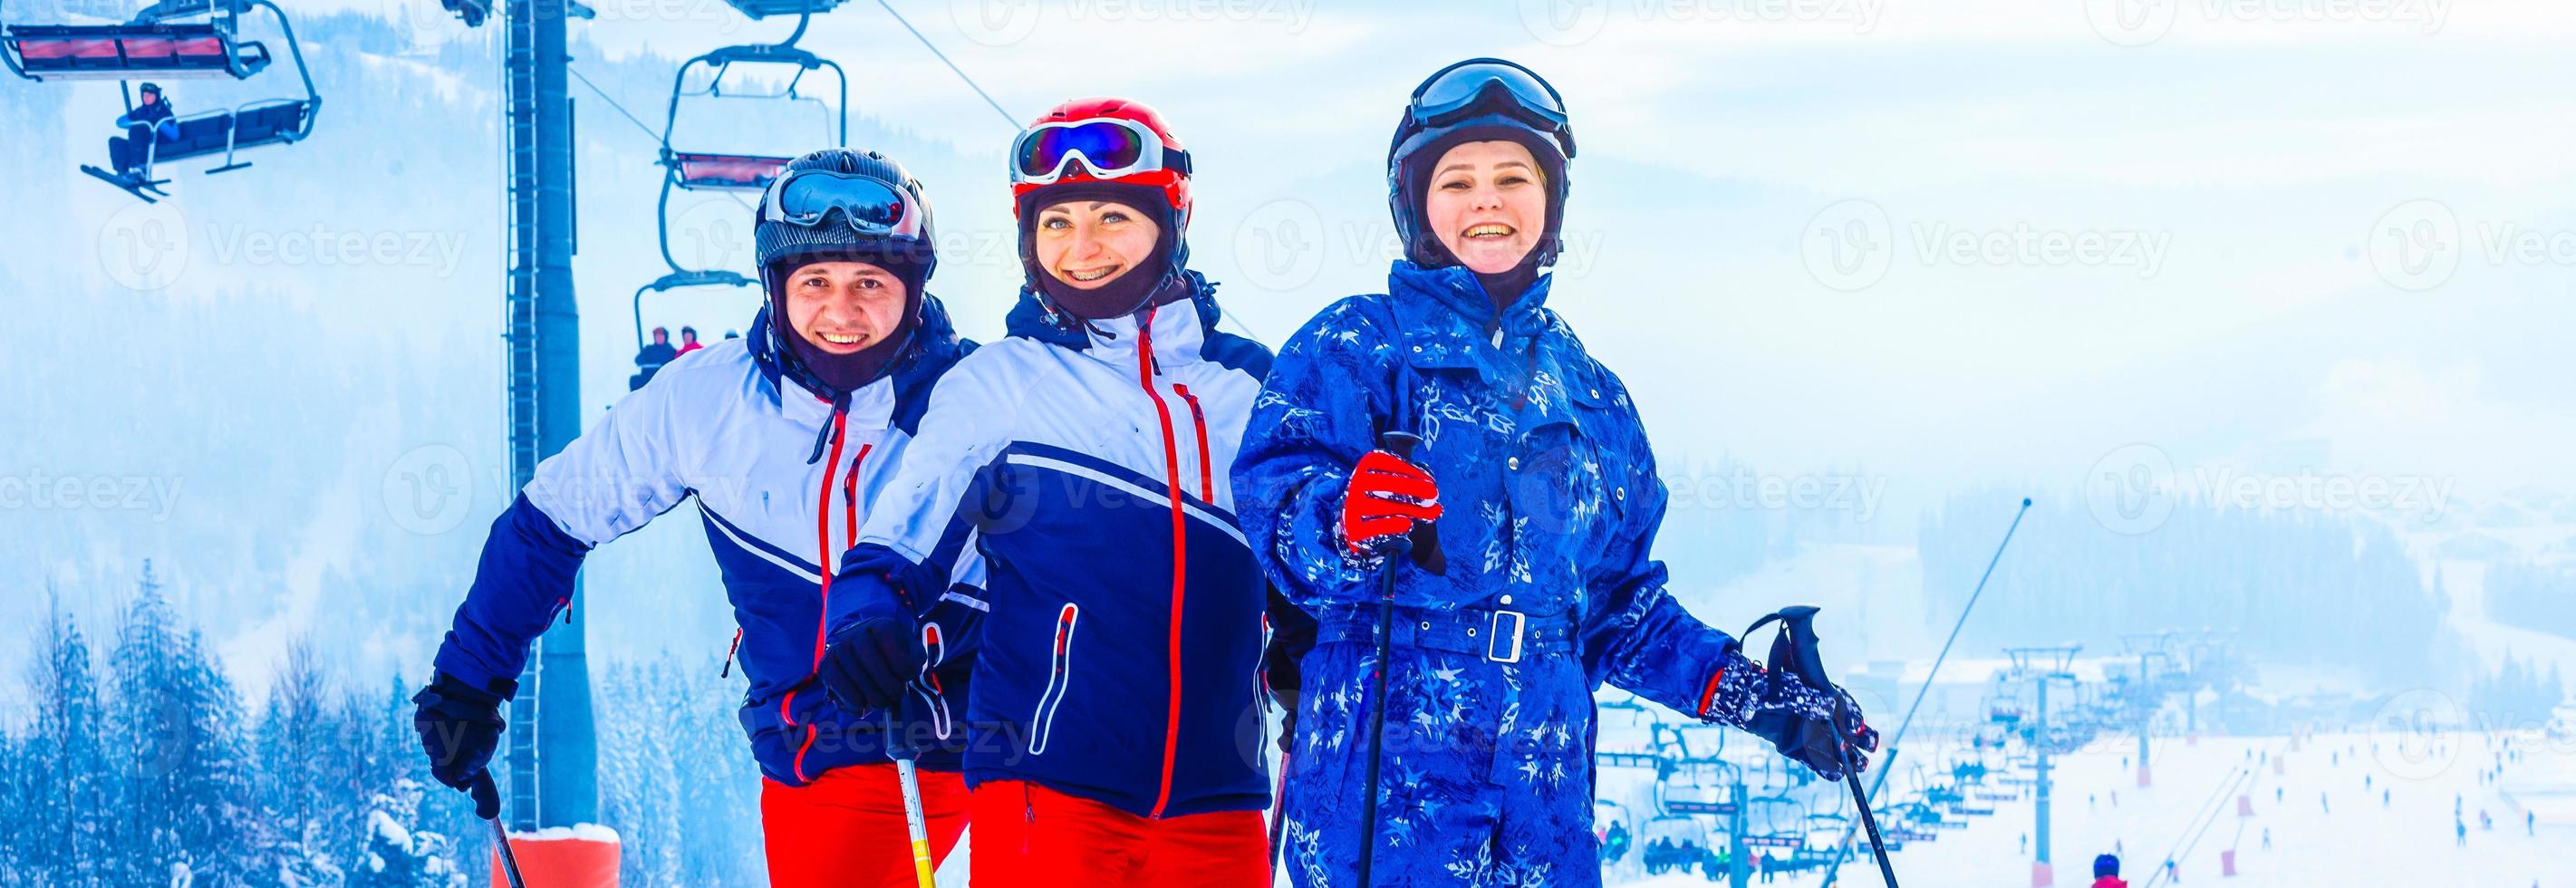 gruppe von freunden beim skiwandern in einem skigebiet foto